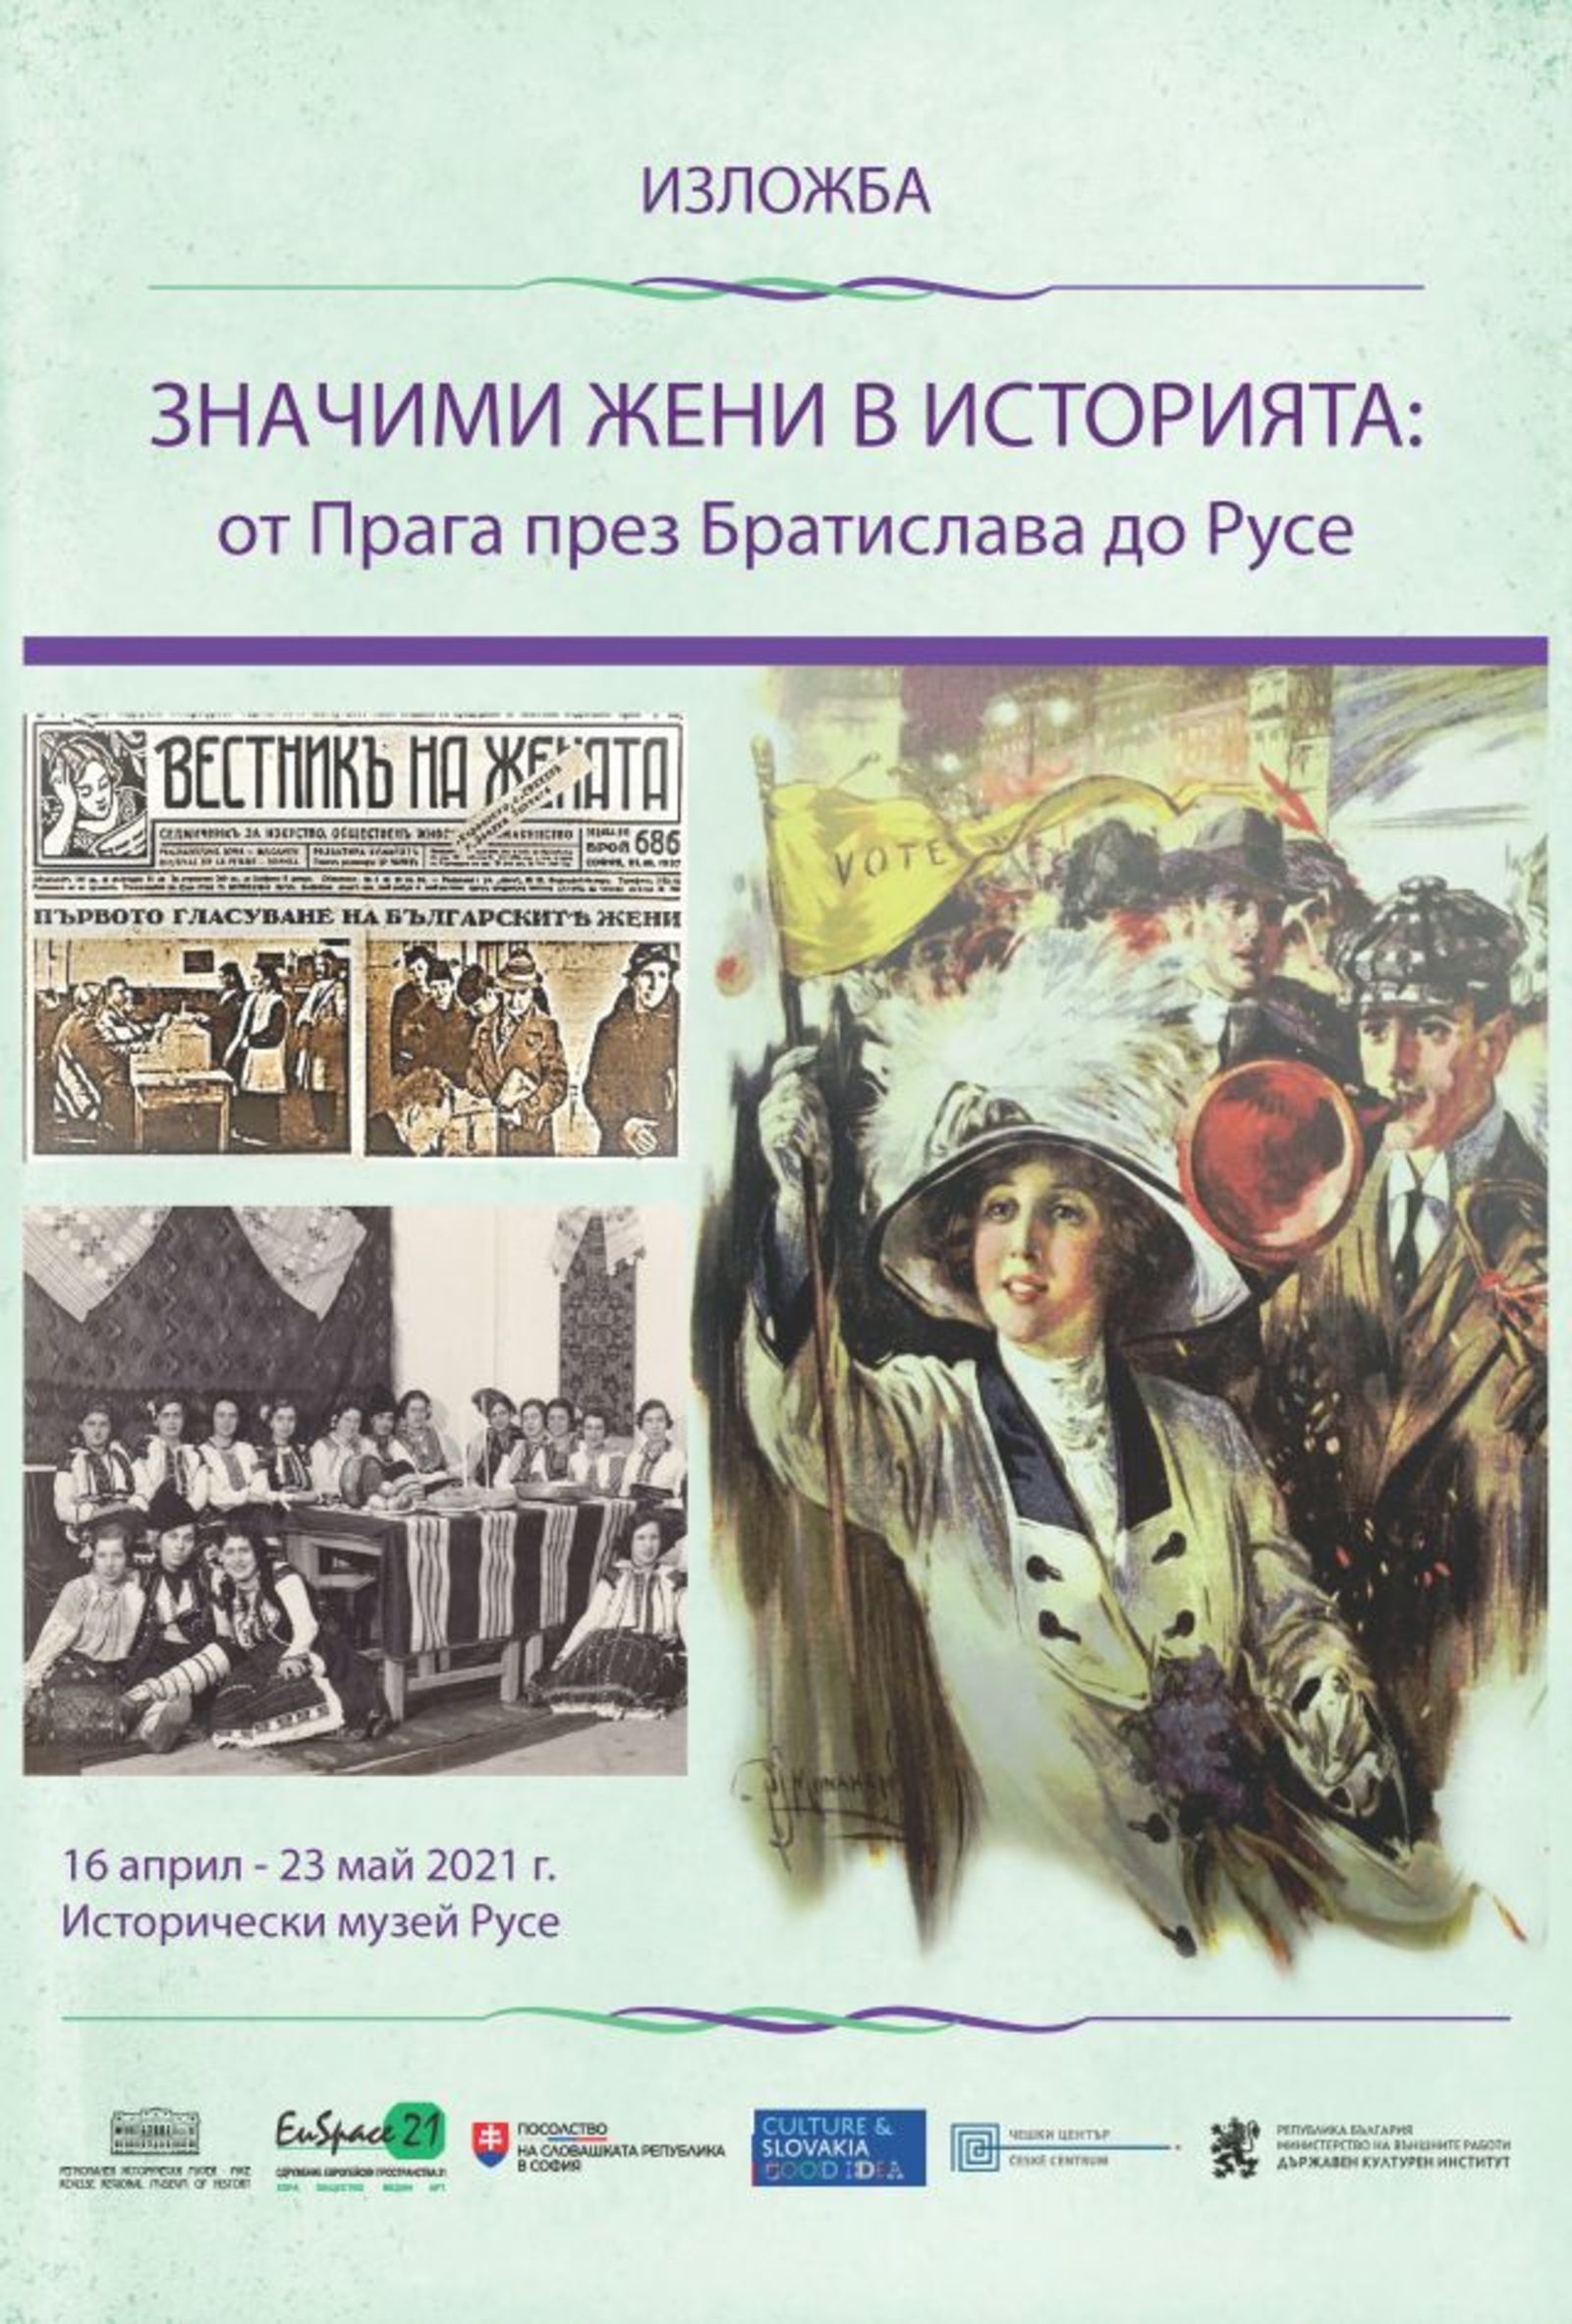 Дипломатическо посещение в Русе по повод изложбата „Значими жени в историята: от Прага през Братислава до Русе“